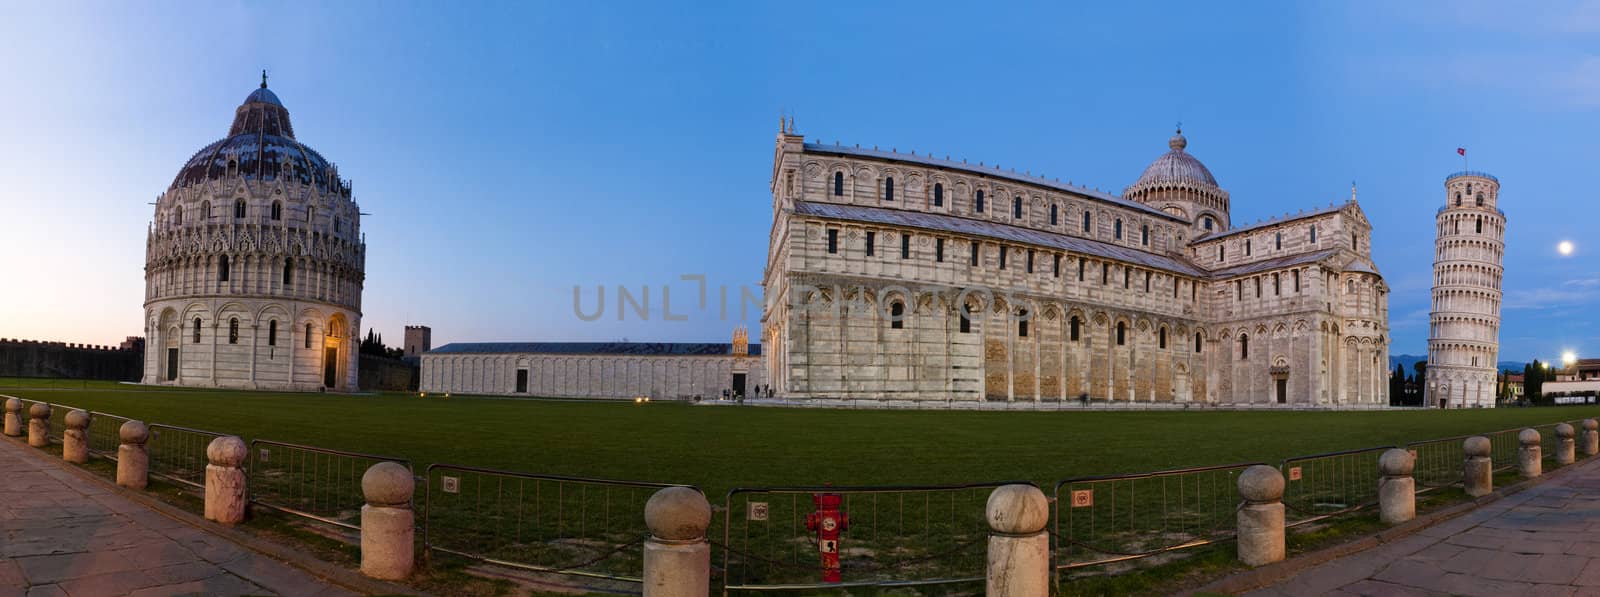 Pisa, Piazza dei miracoli by vinciber